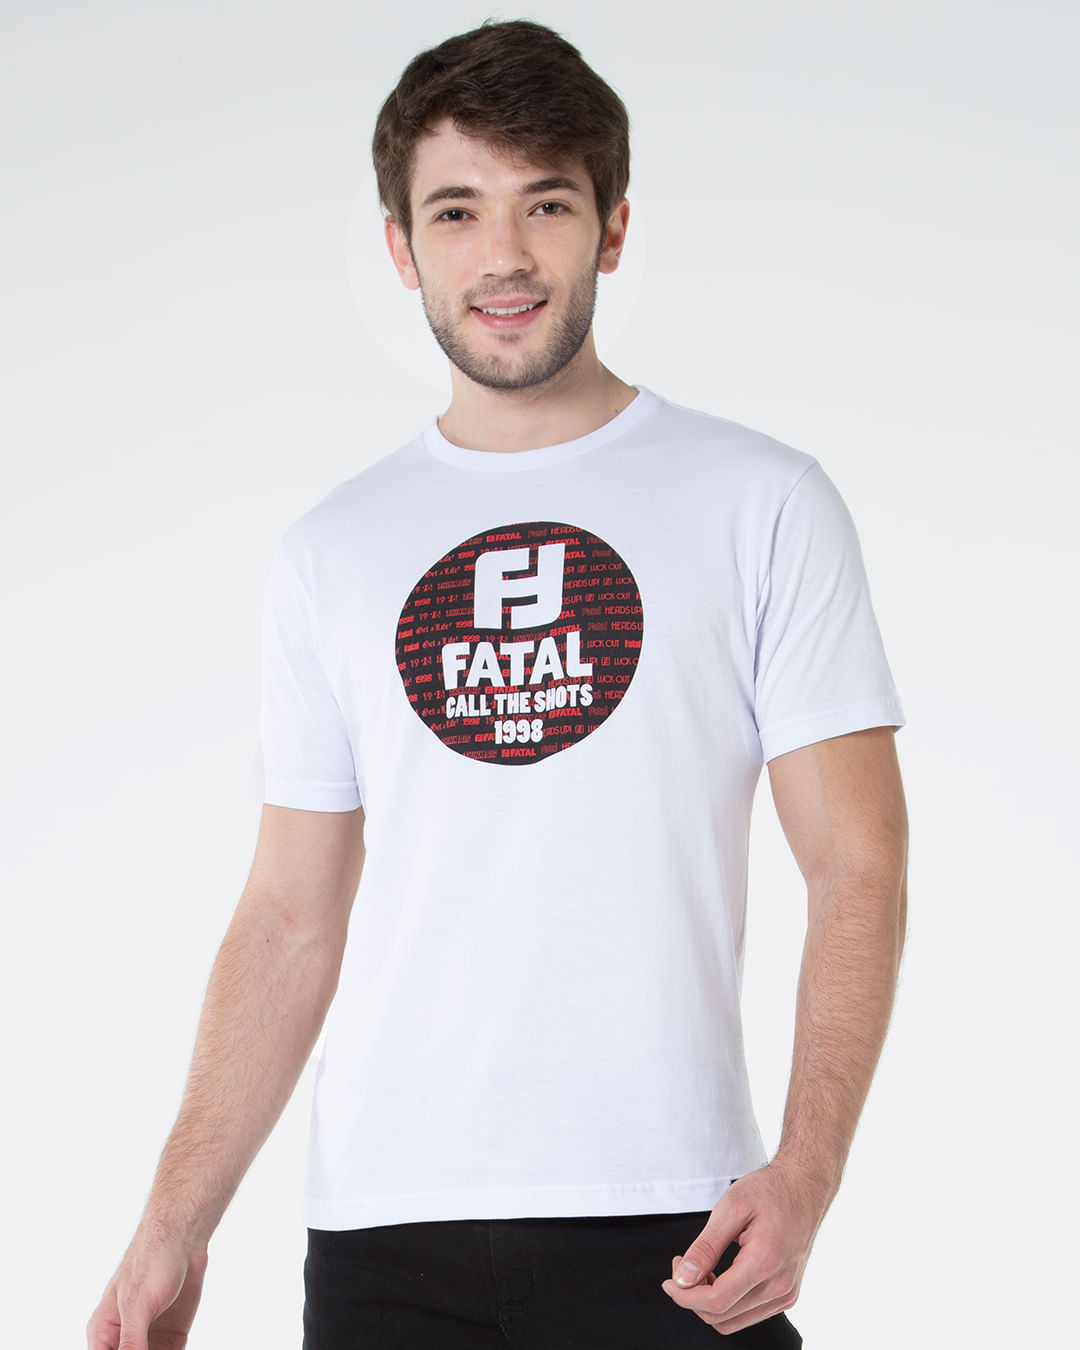 Camiseta-Estampa-Fatal-Branca